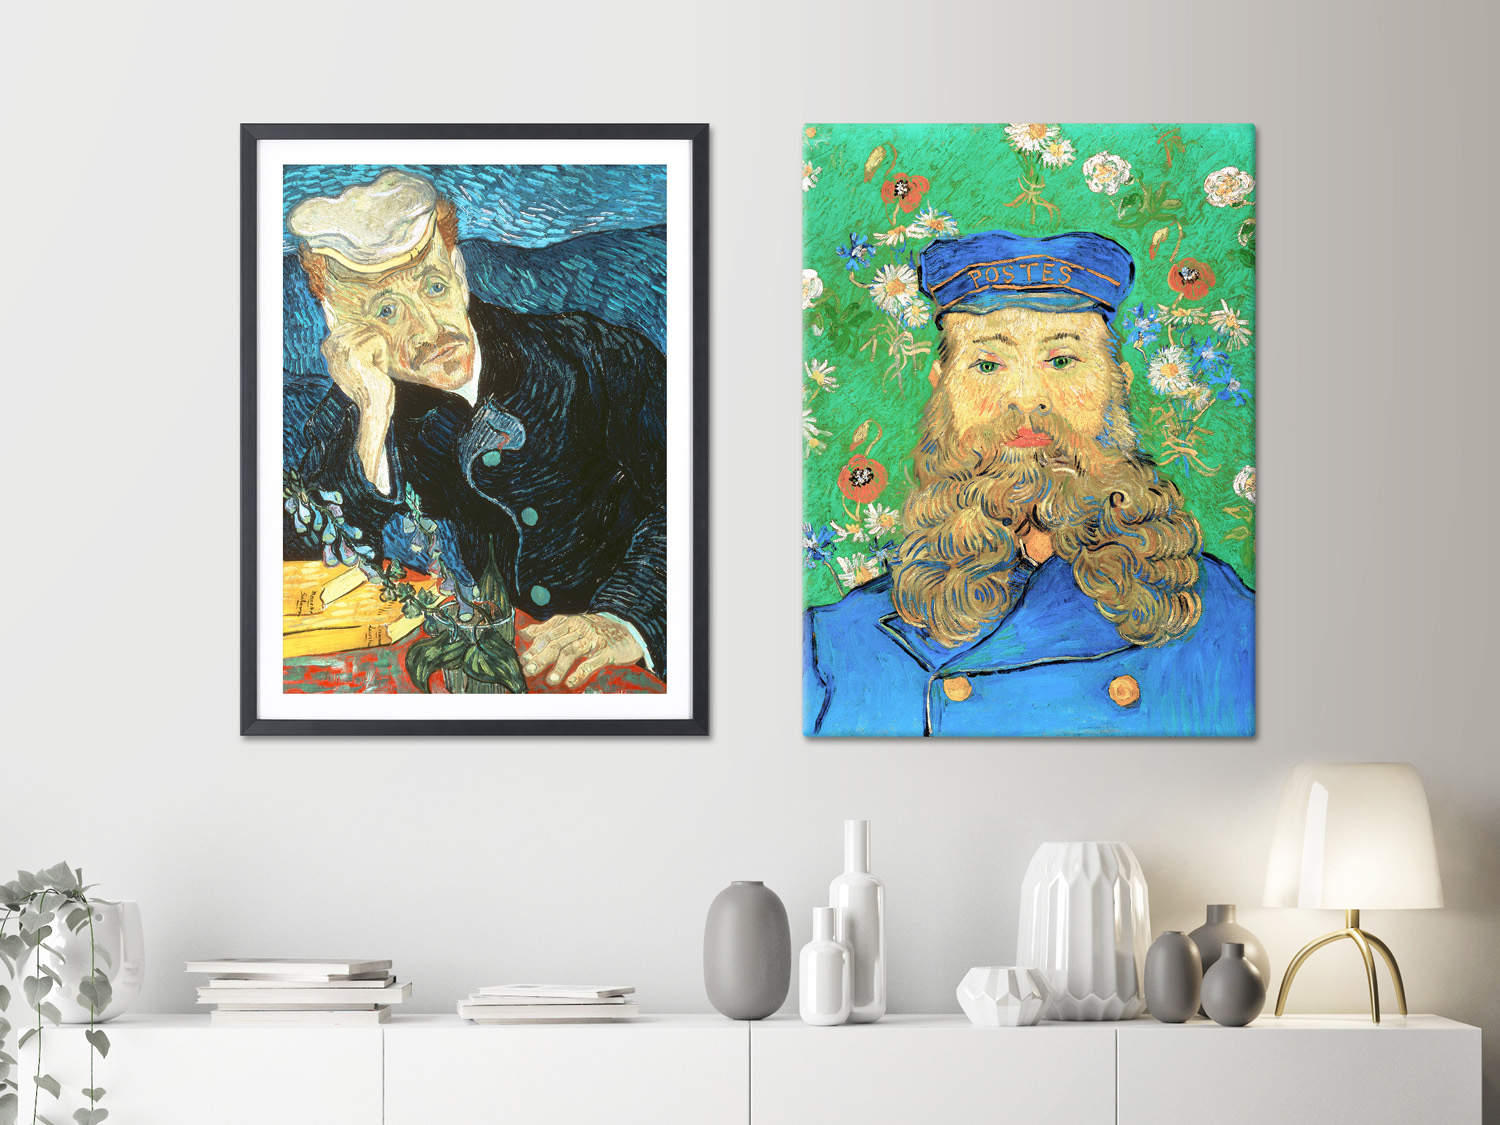 La obra de Van Gogh en el cine y la decoración